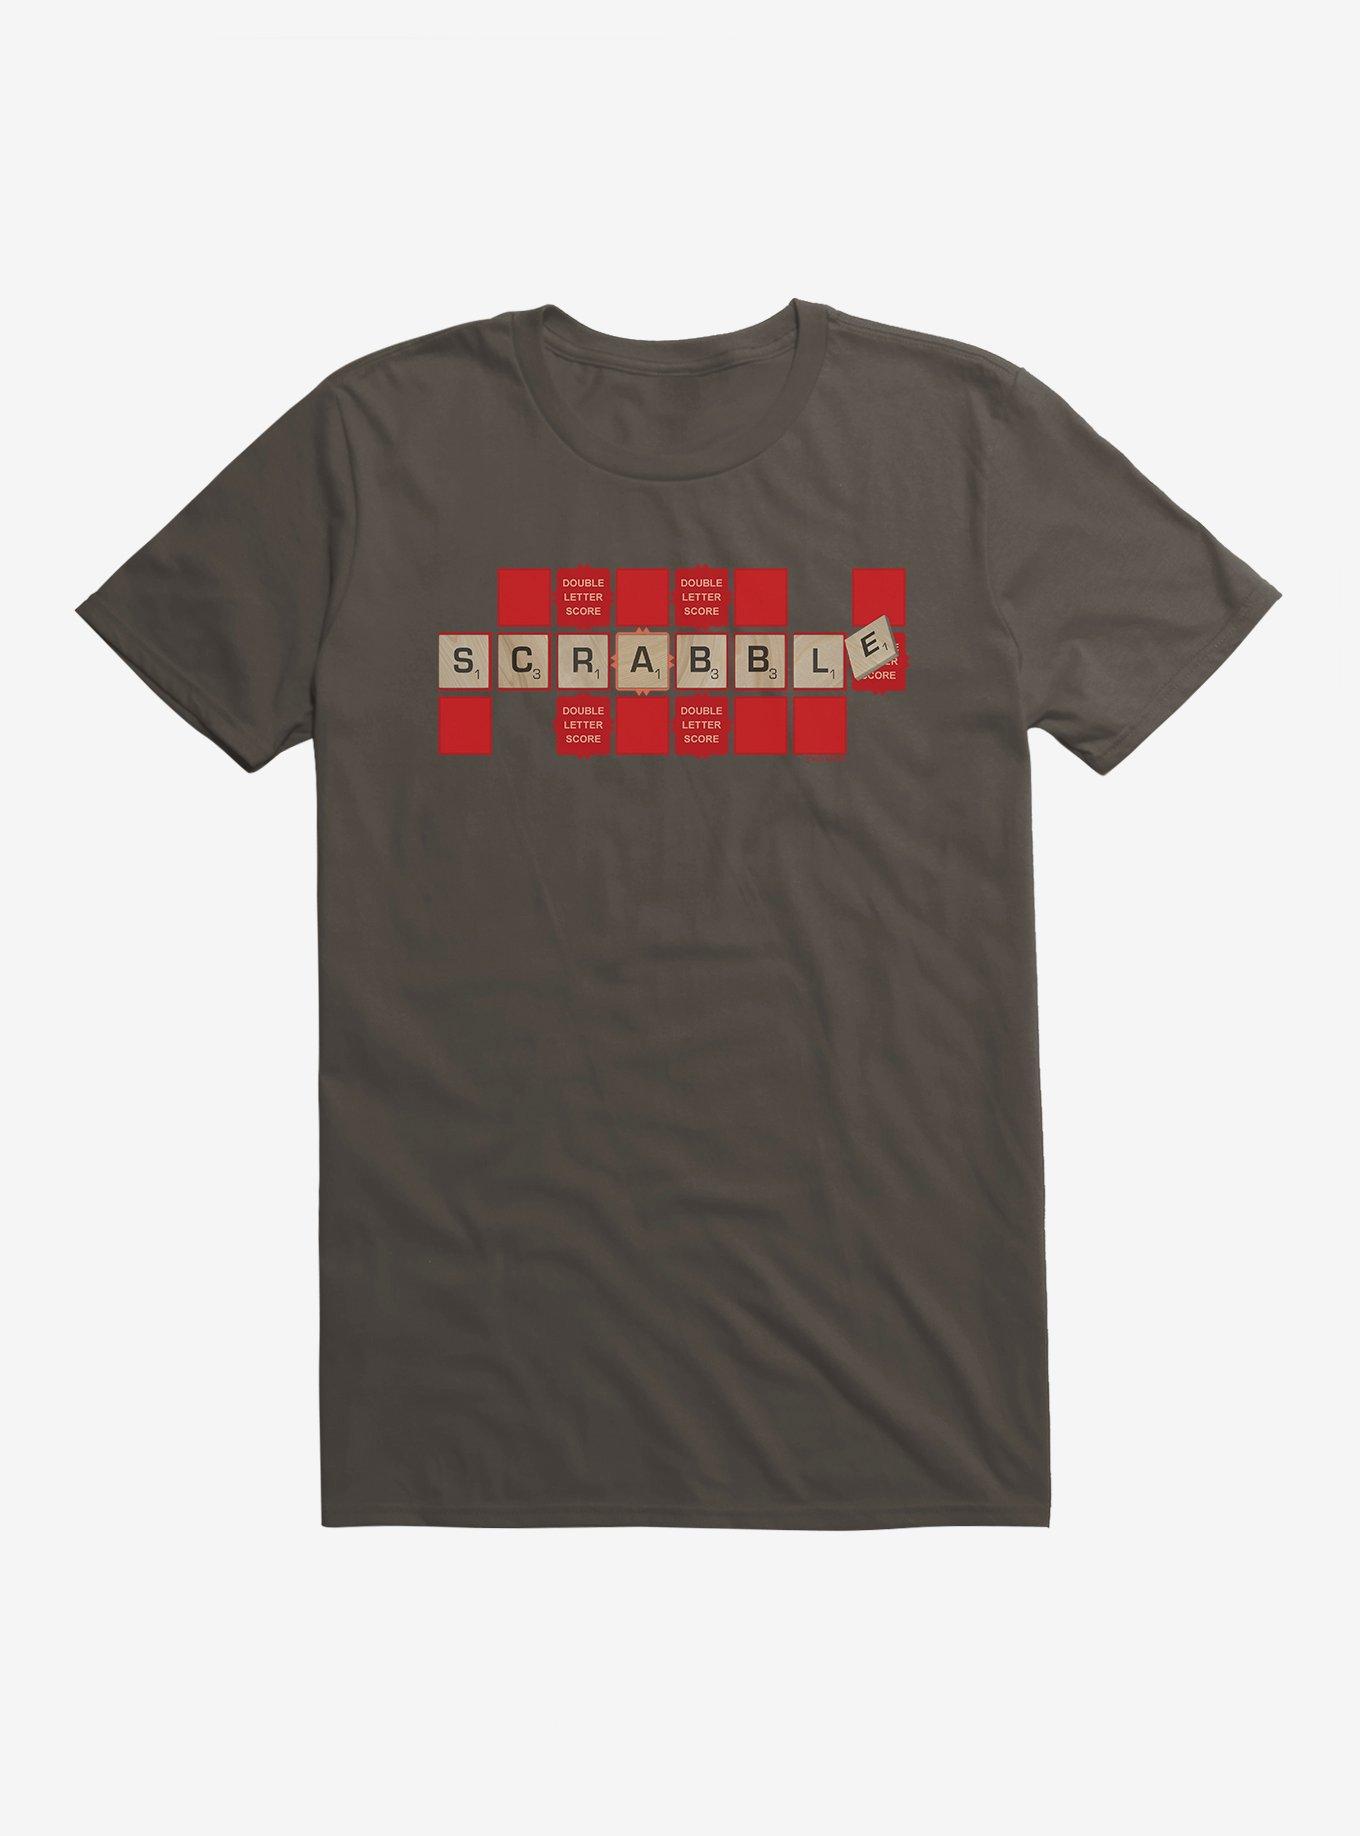 Scrabble Double Letter Score T-Shirt